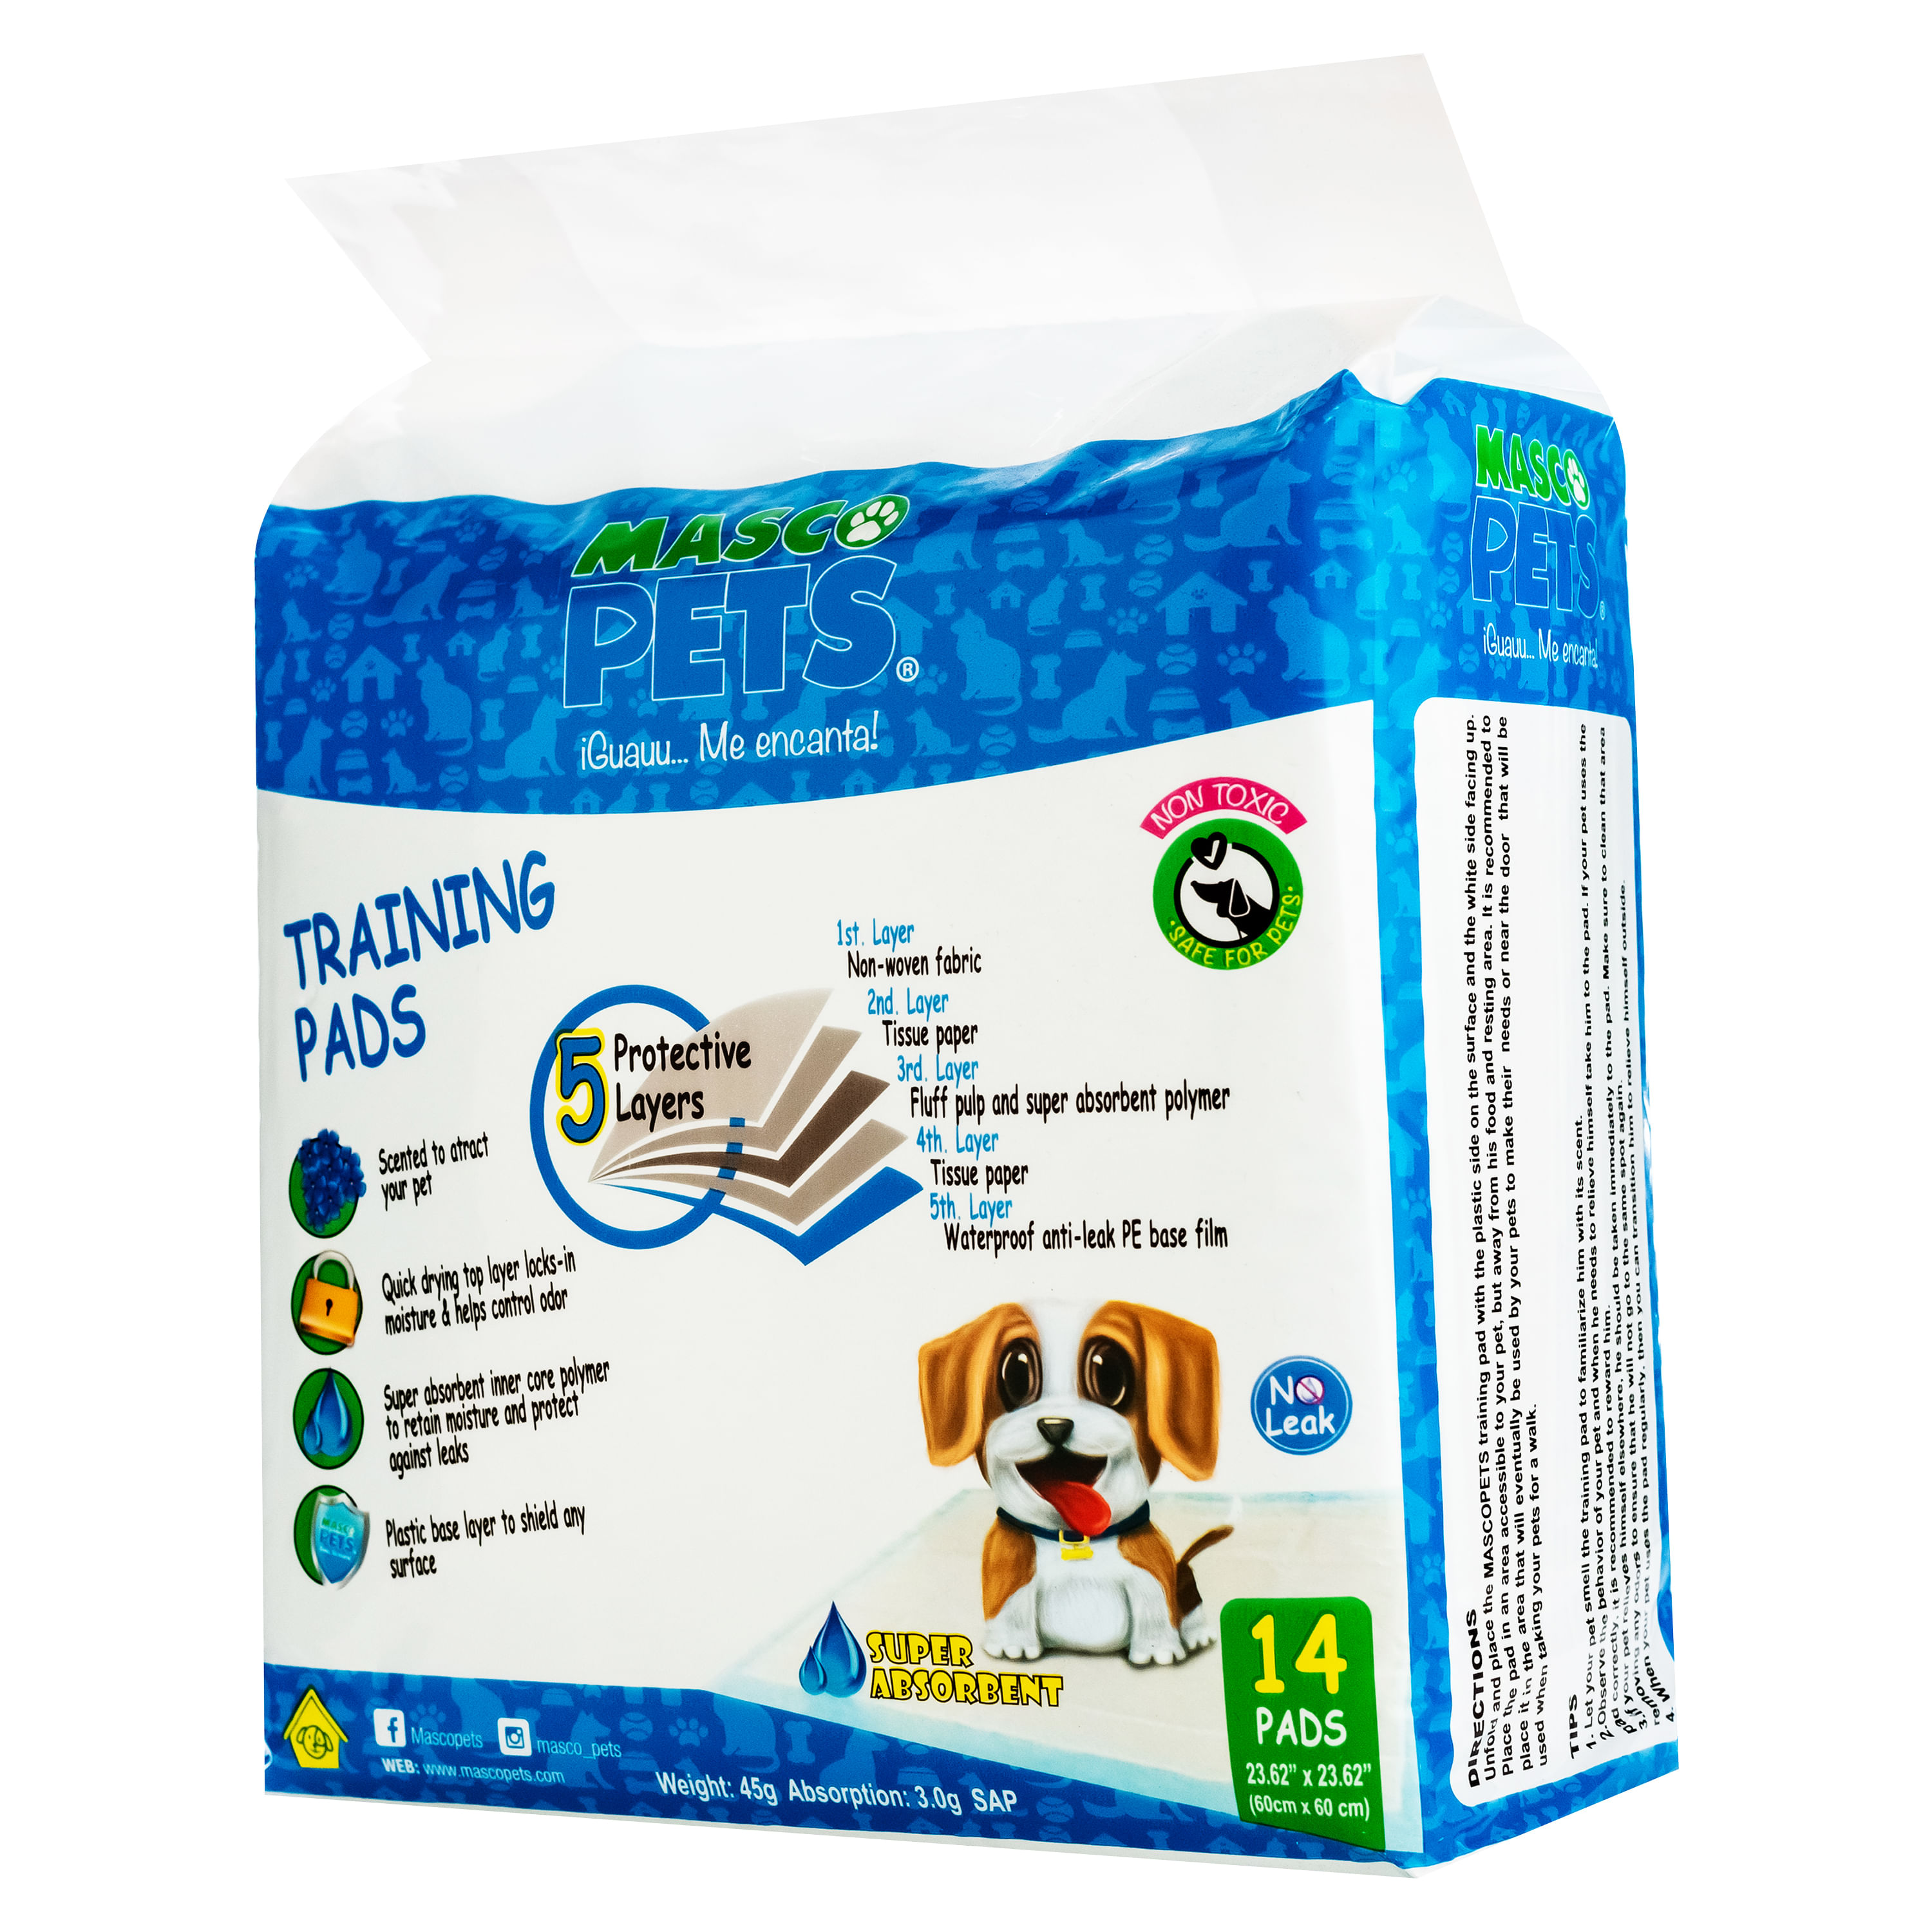 Empapadores Absorbentes de entrenamiento perro 60x90 (50 ud) Record -  XICANIN - Tiendas online para mascotas. Productos para mascotas